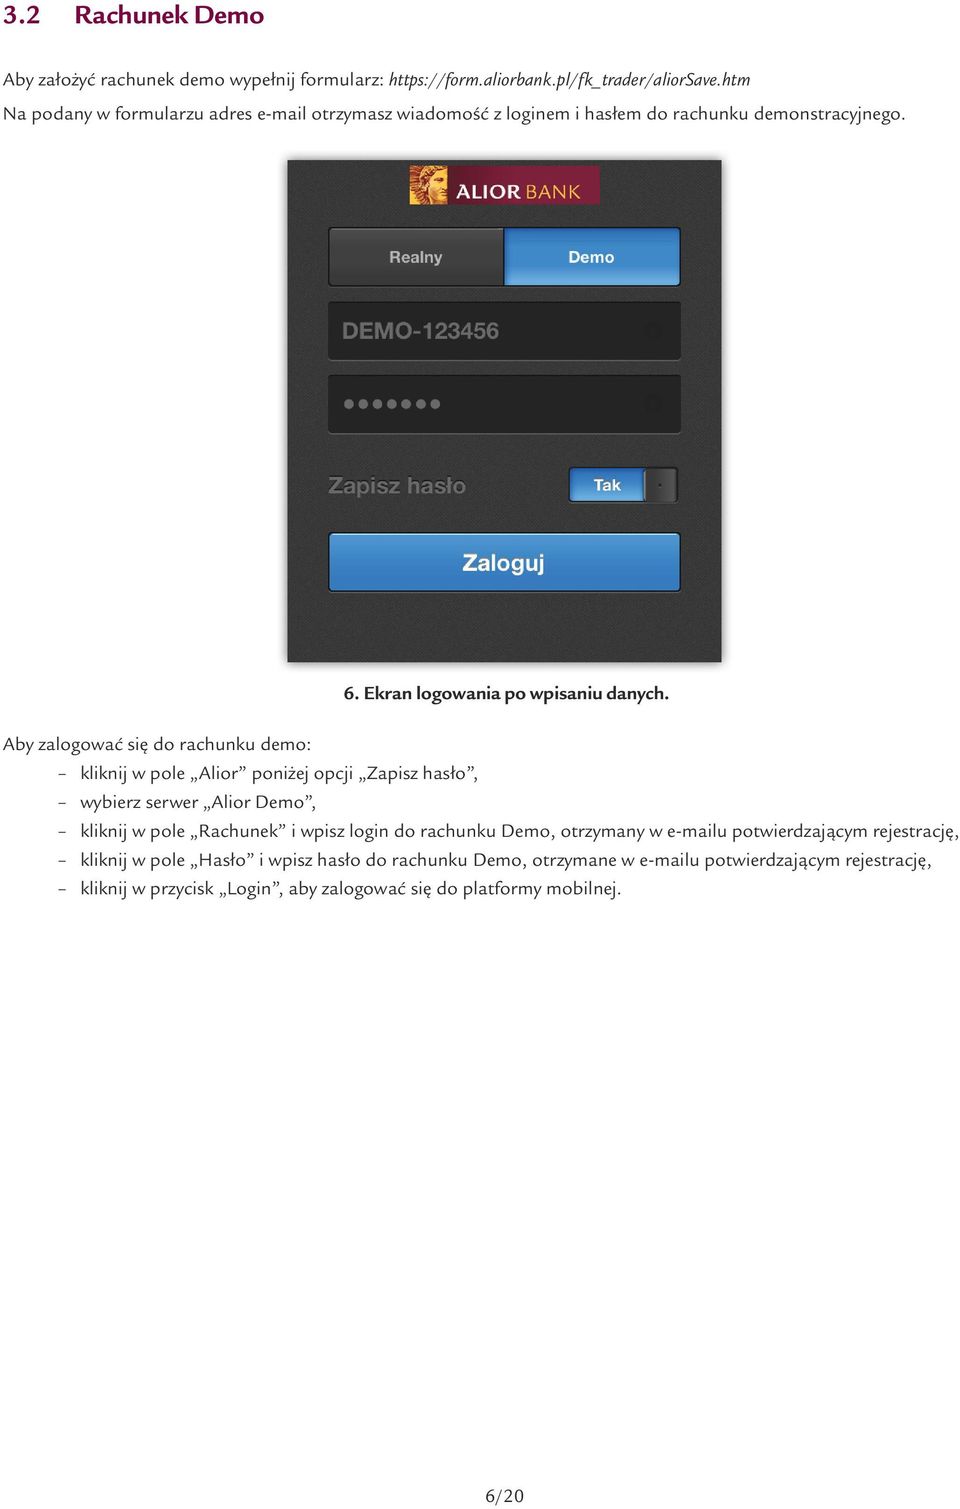 Aby zalogować się do rachunku demo: kliknij w pole Alior poniżej opcji Zapisz hasło, wybierz serwer Alior Demo, kliknij w pole Rachunek i wpisz login do rachunku